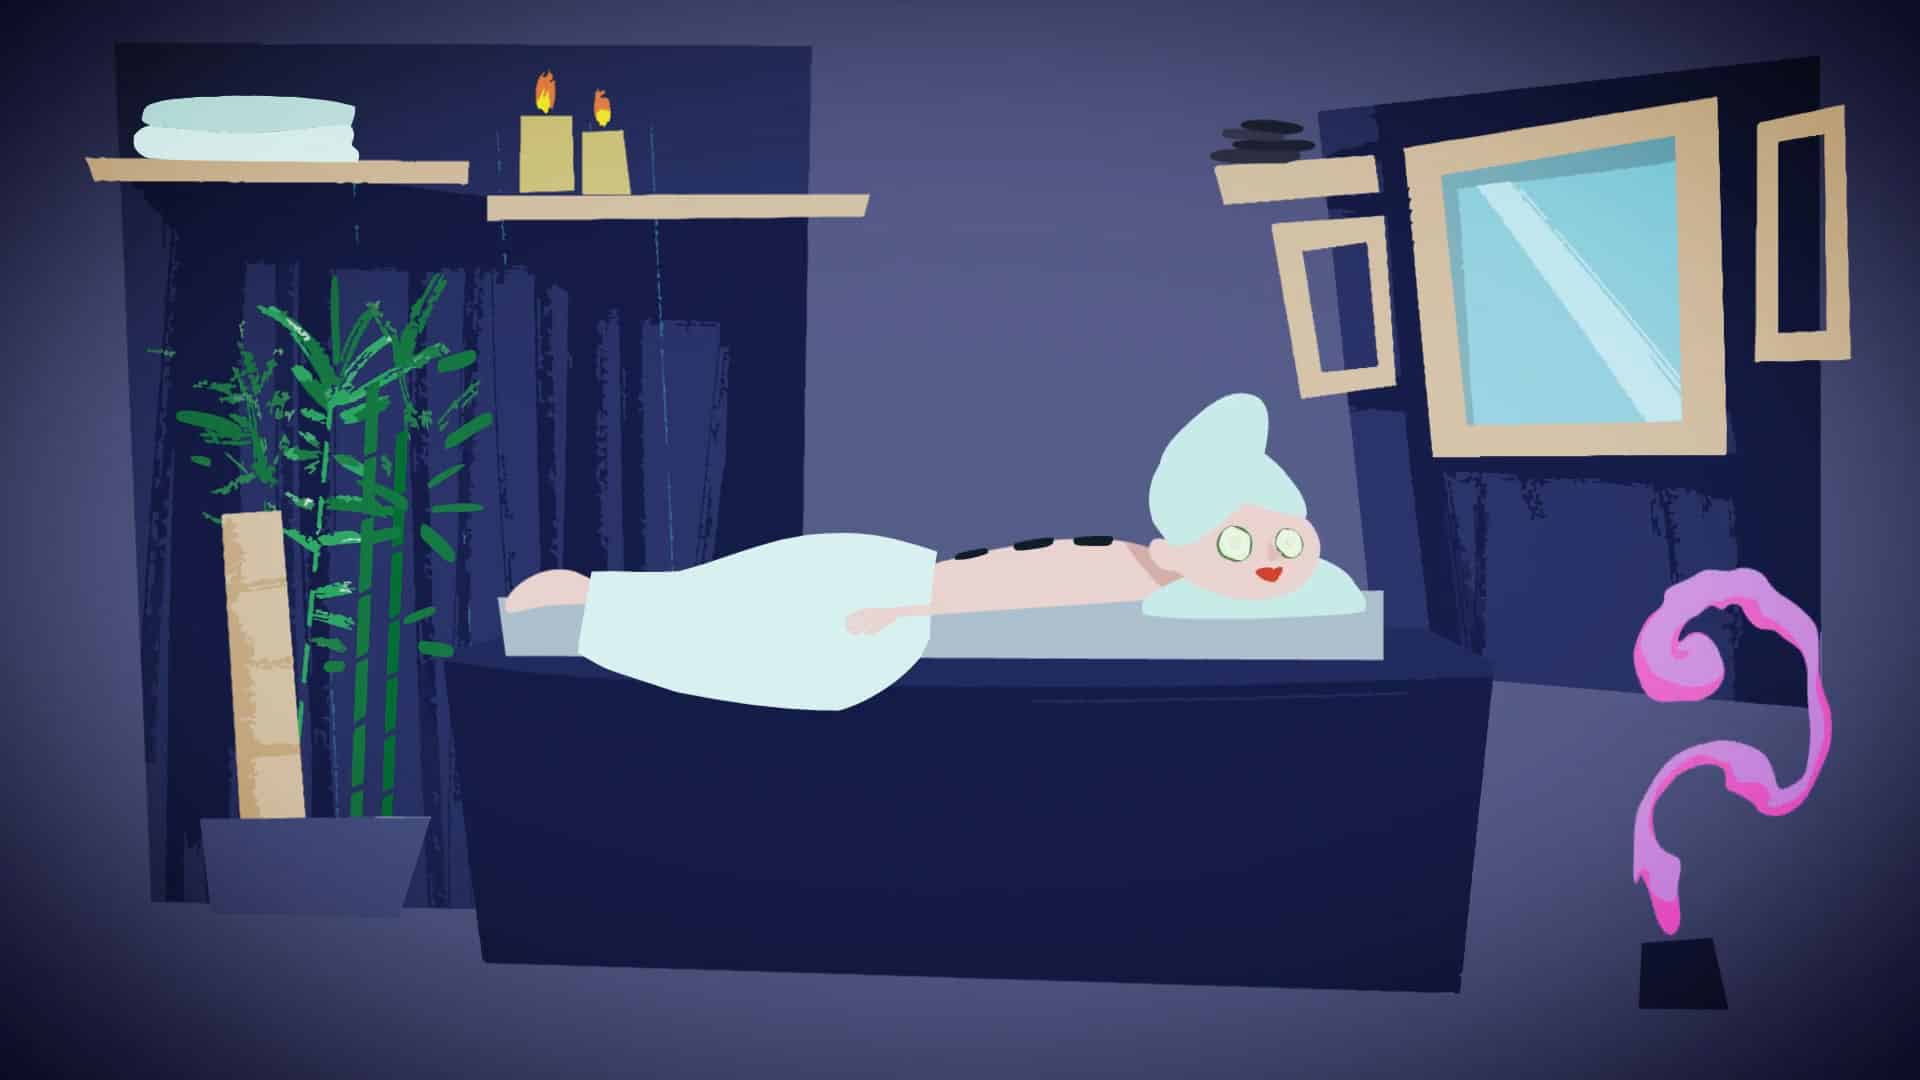 MSC CROCIERE - Promo Social - Video Animato realizzato per la campagna promozionale social di MSC Crociere - Anno di produzione: 2018